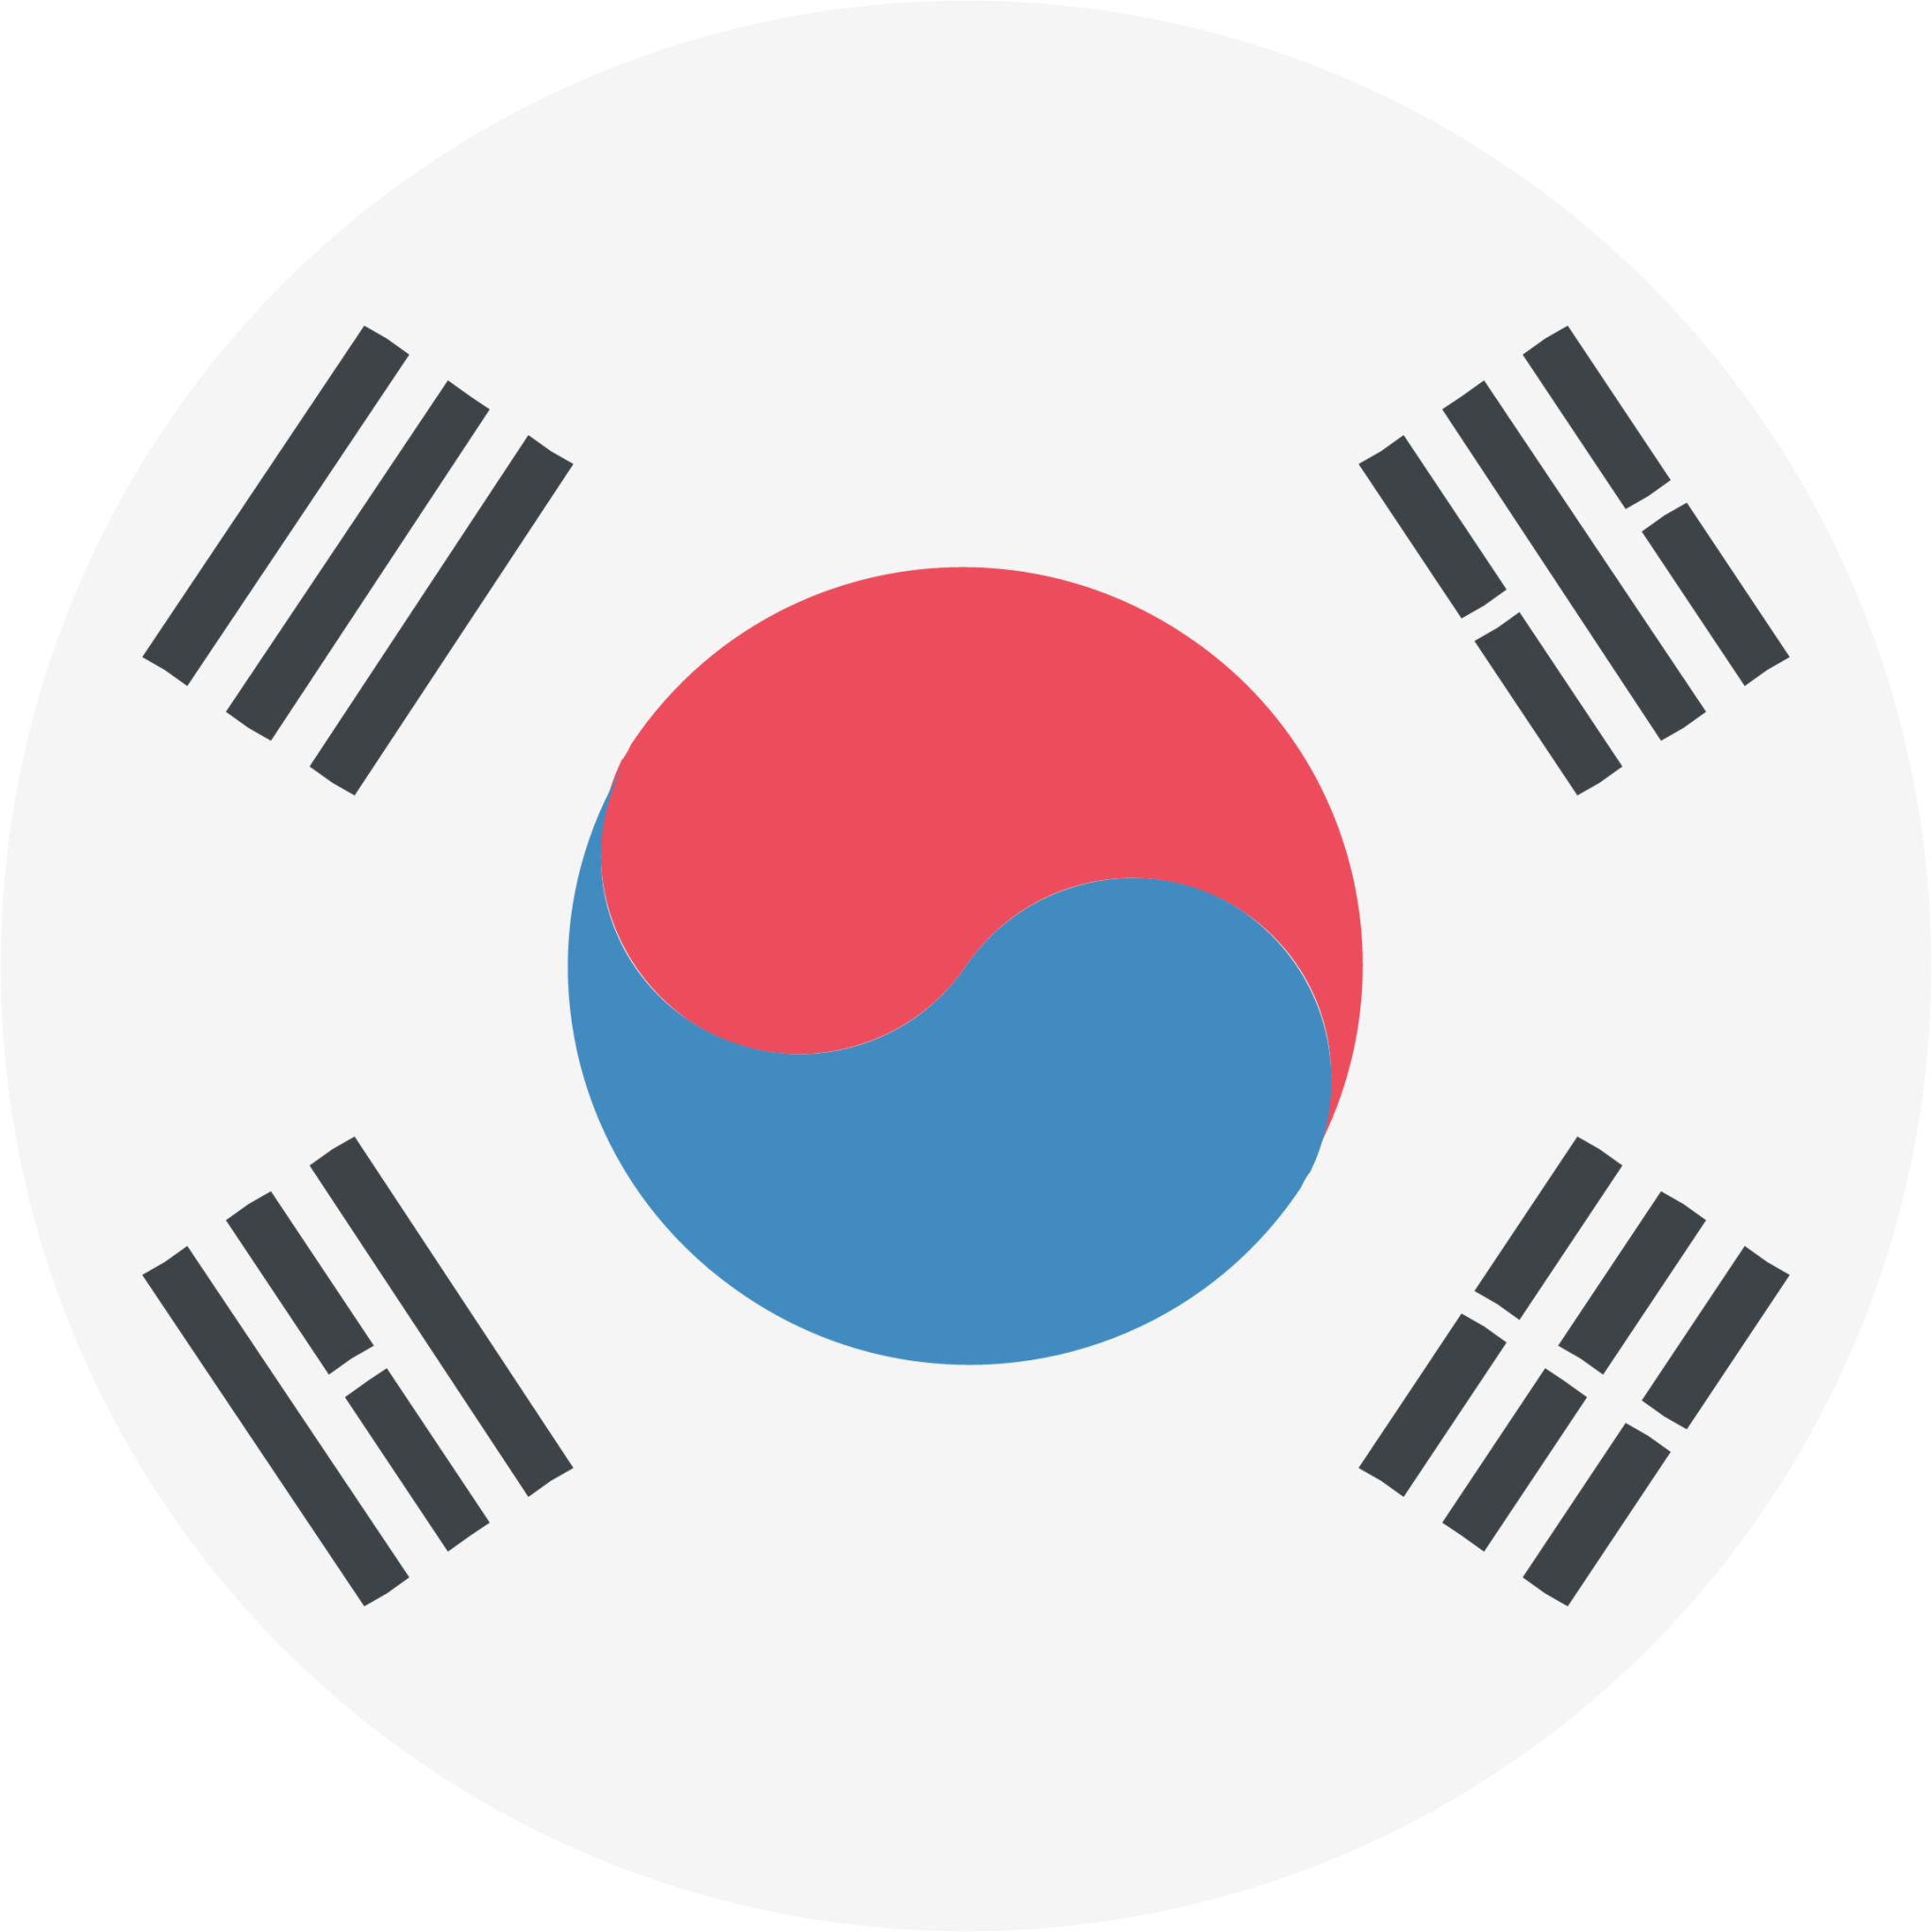 korea emoji